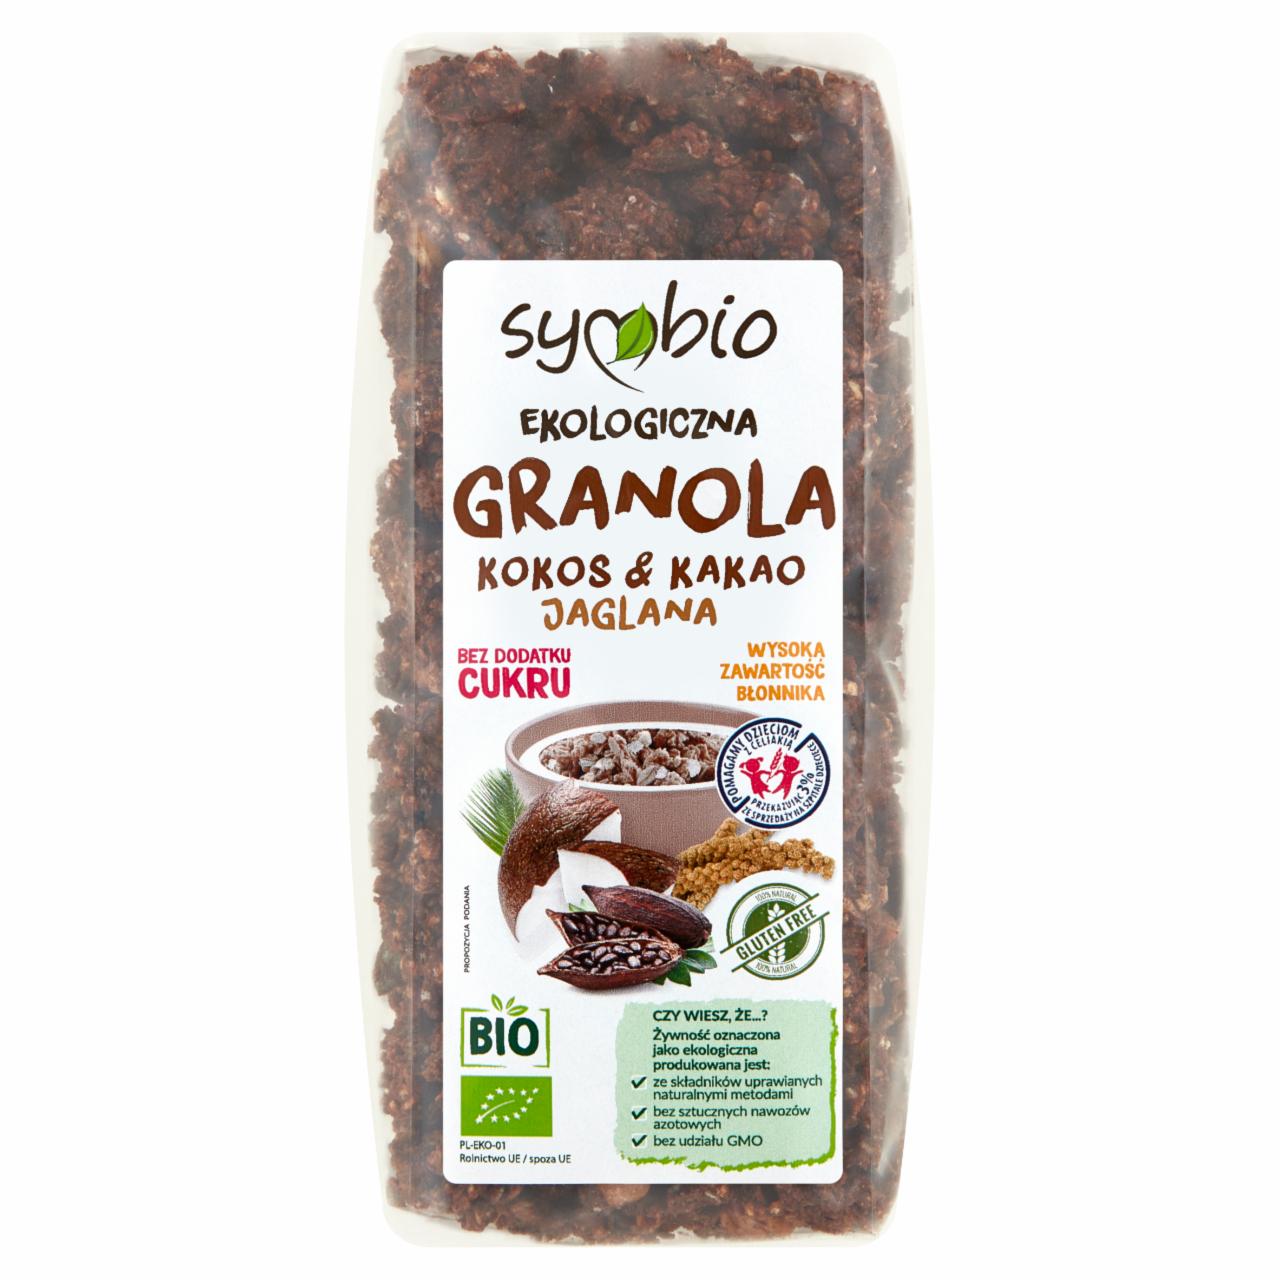 Zdjęcia - Symbio Ekologiczna granola jaglana kokos & kakao 350 g